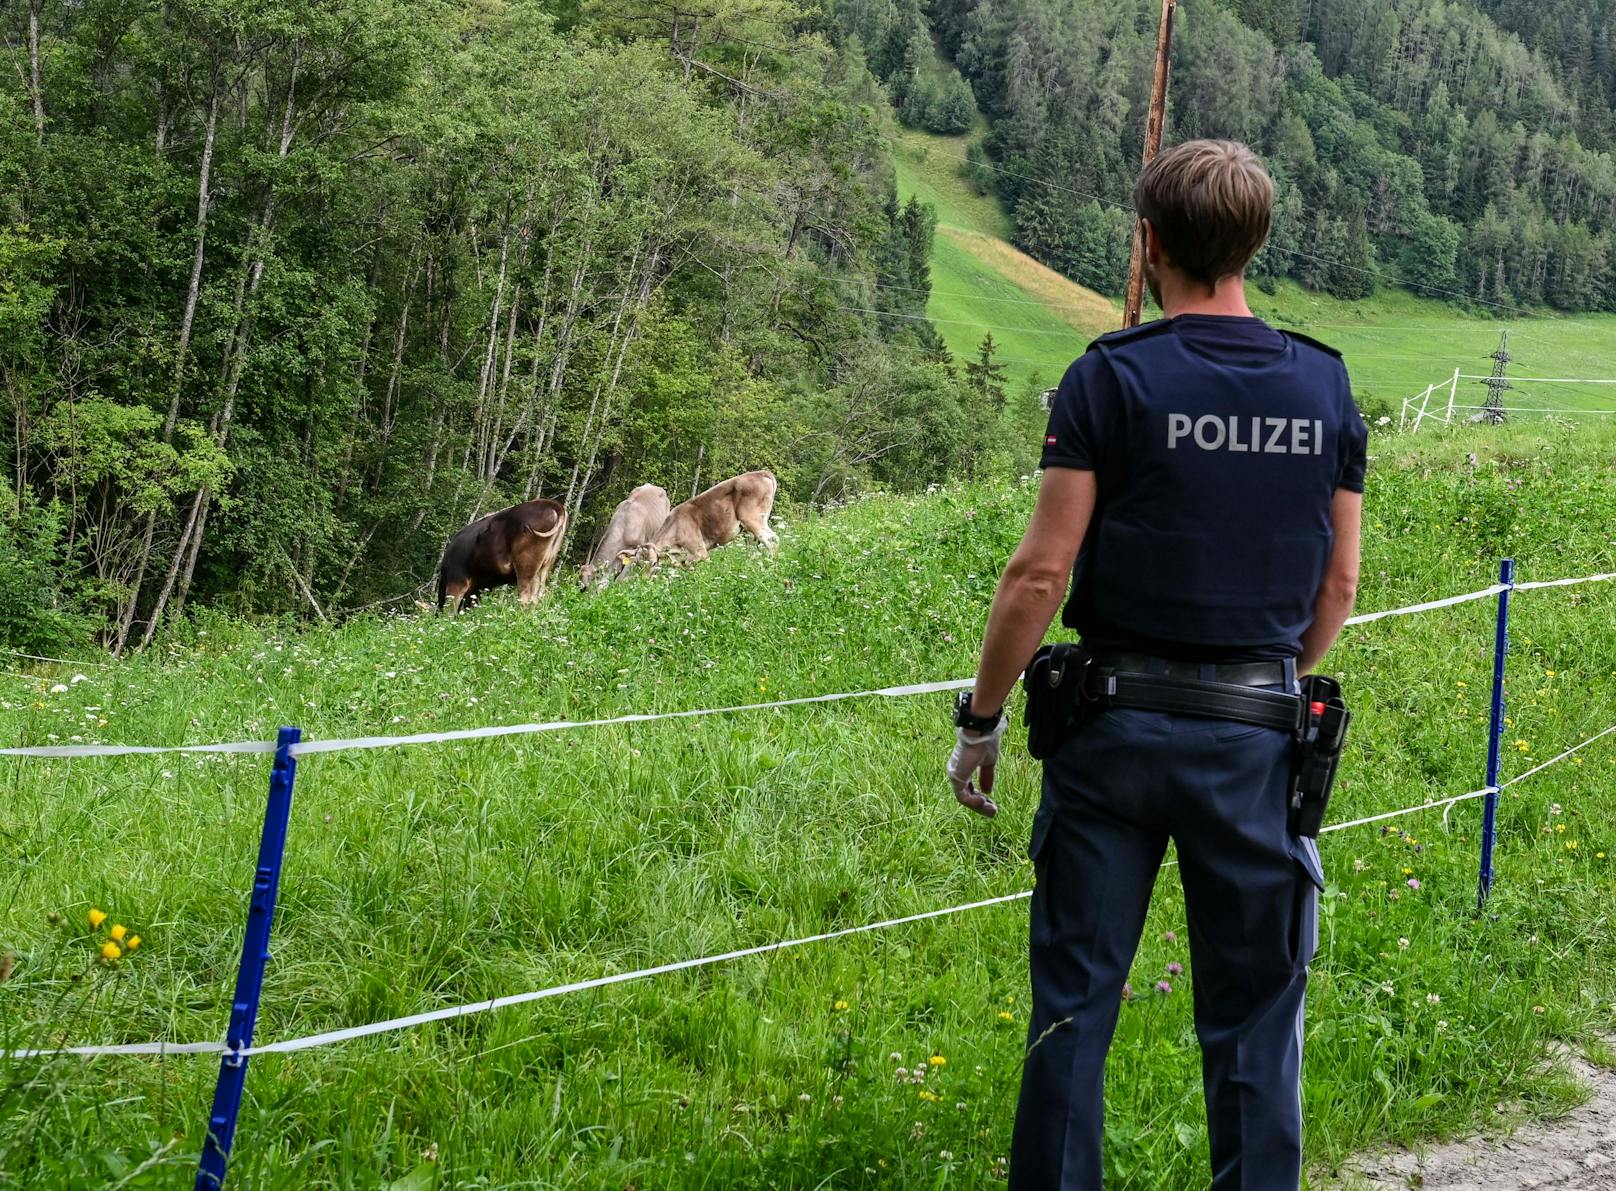 Blutiger Schock für einen Landwirten in der Tiroler Gemeinde Mieders. Unbekannte haben eines seiner Kälber auf der Weide geschlachtet (14. Juli 2020)